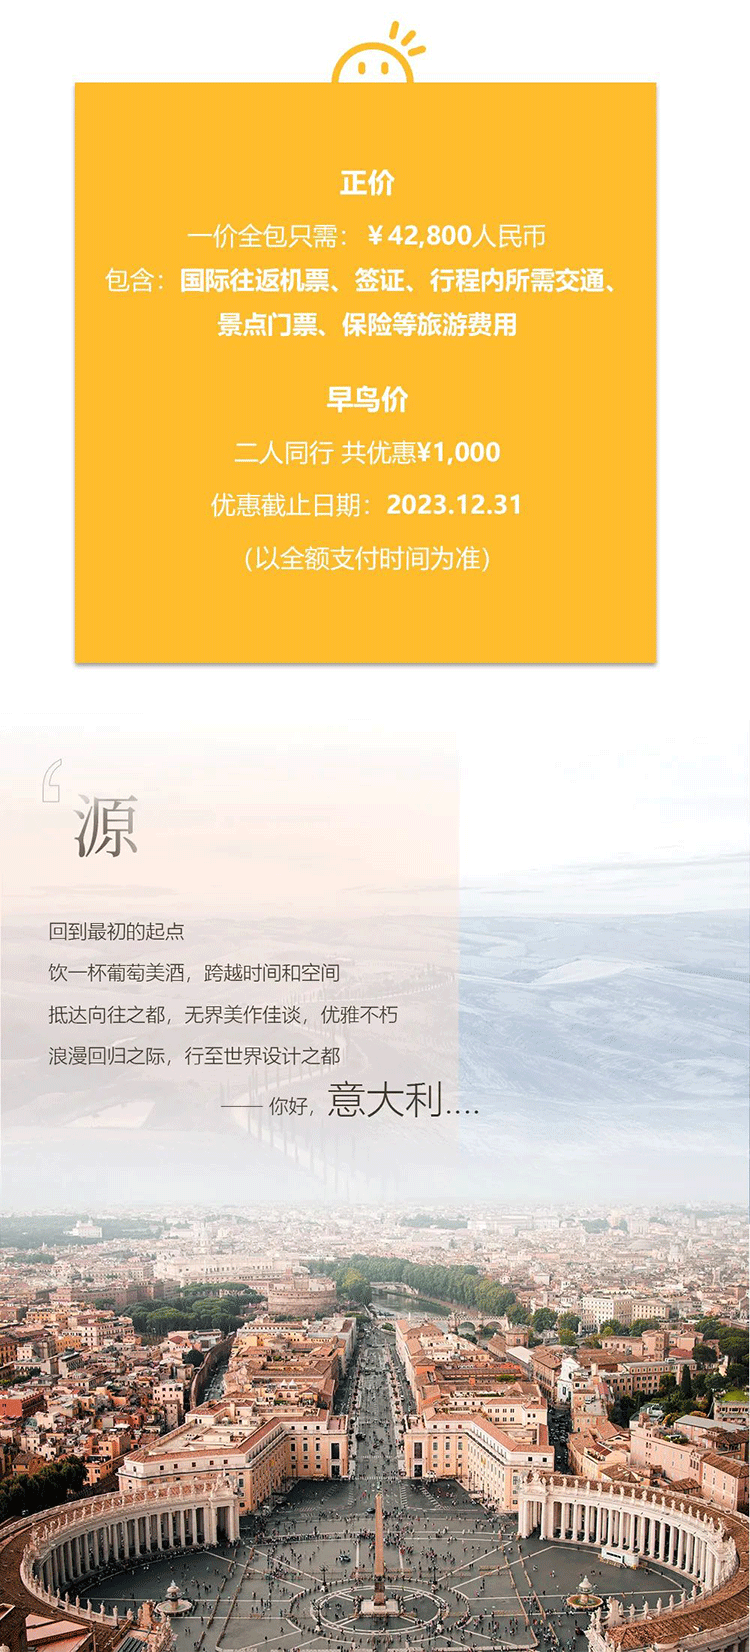 凯发k8国际官网·(中国)首页登录